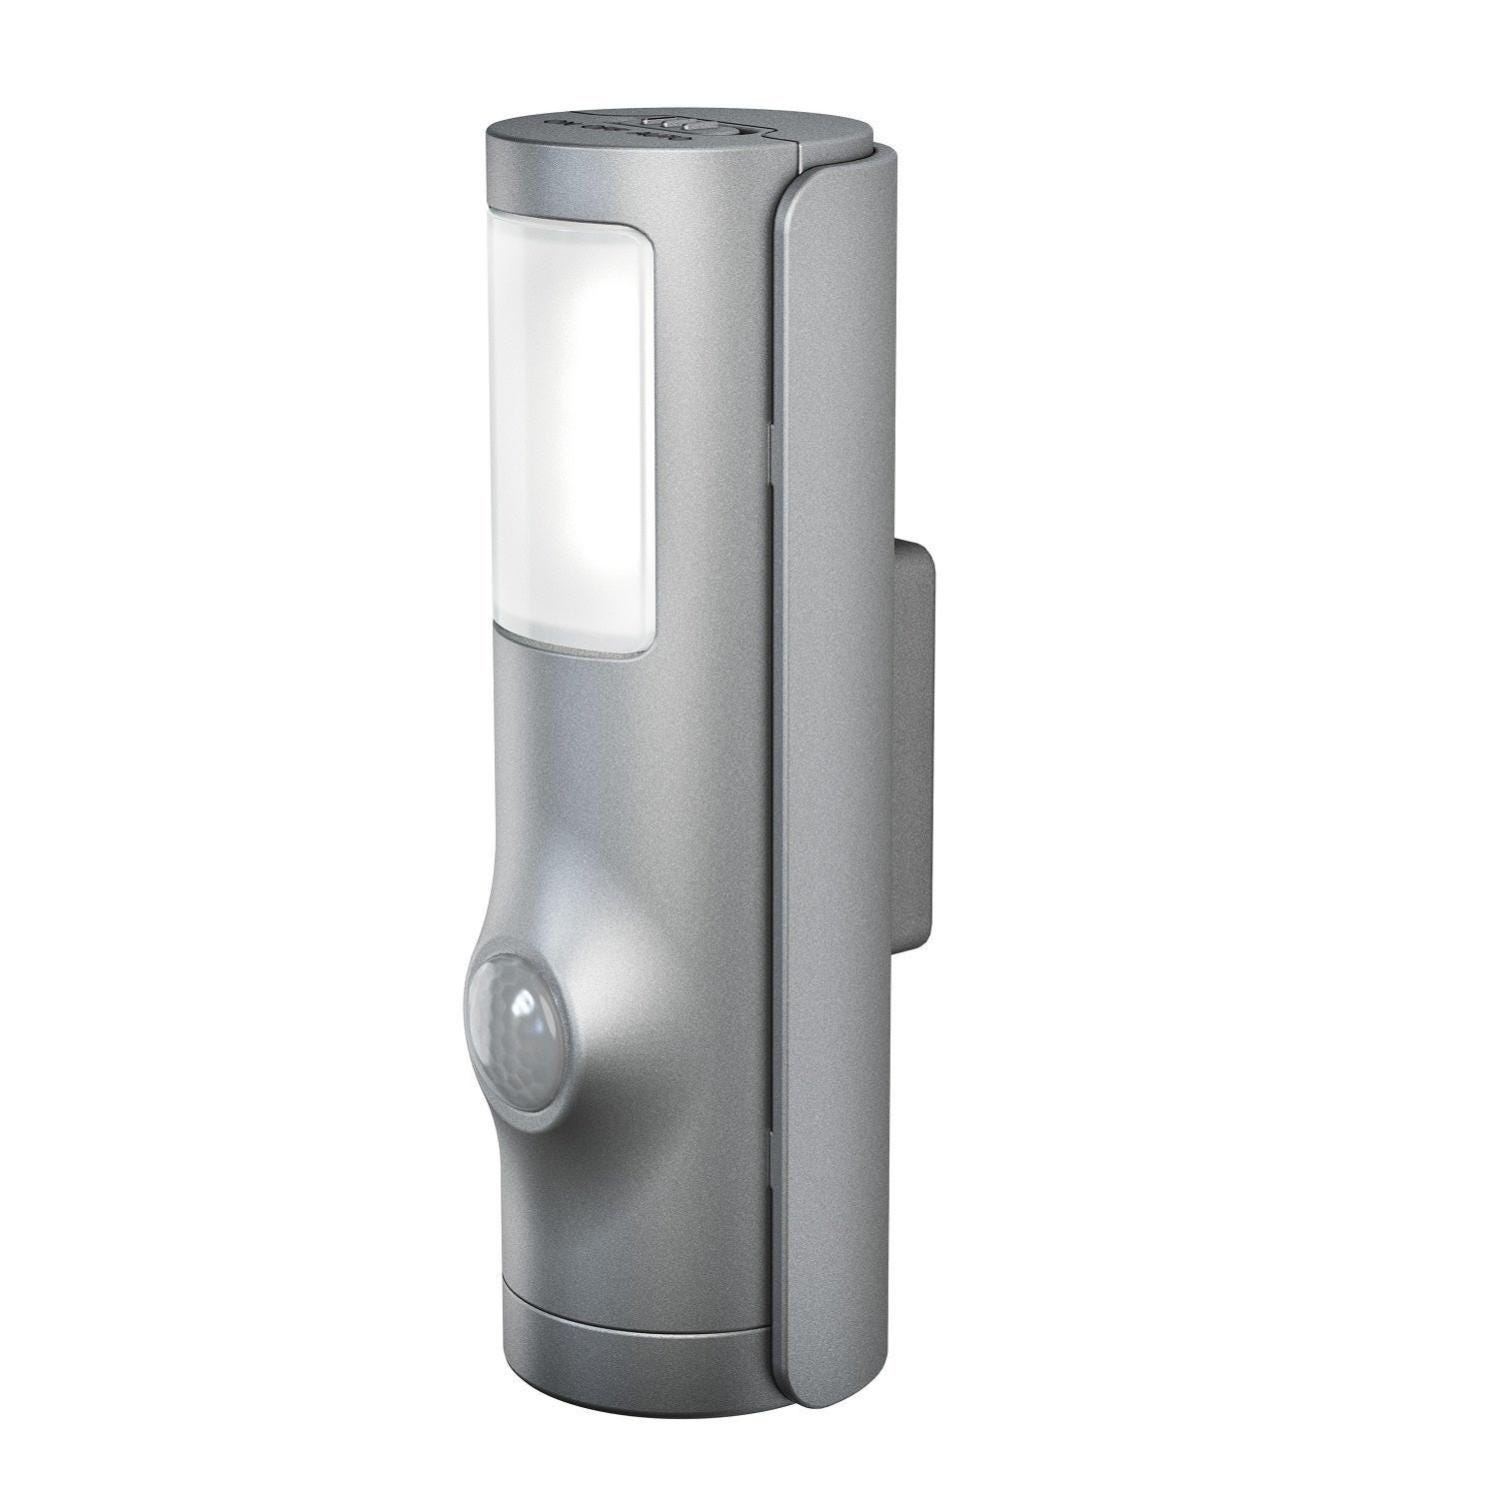 Nightlux à LED, blanc avec détecteur de présence intégré.